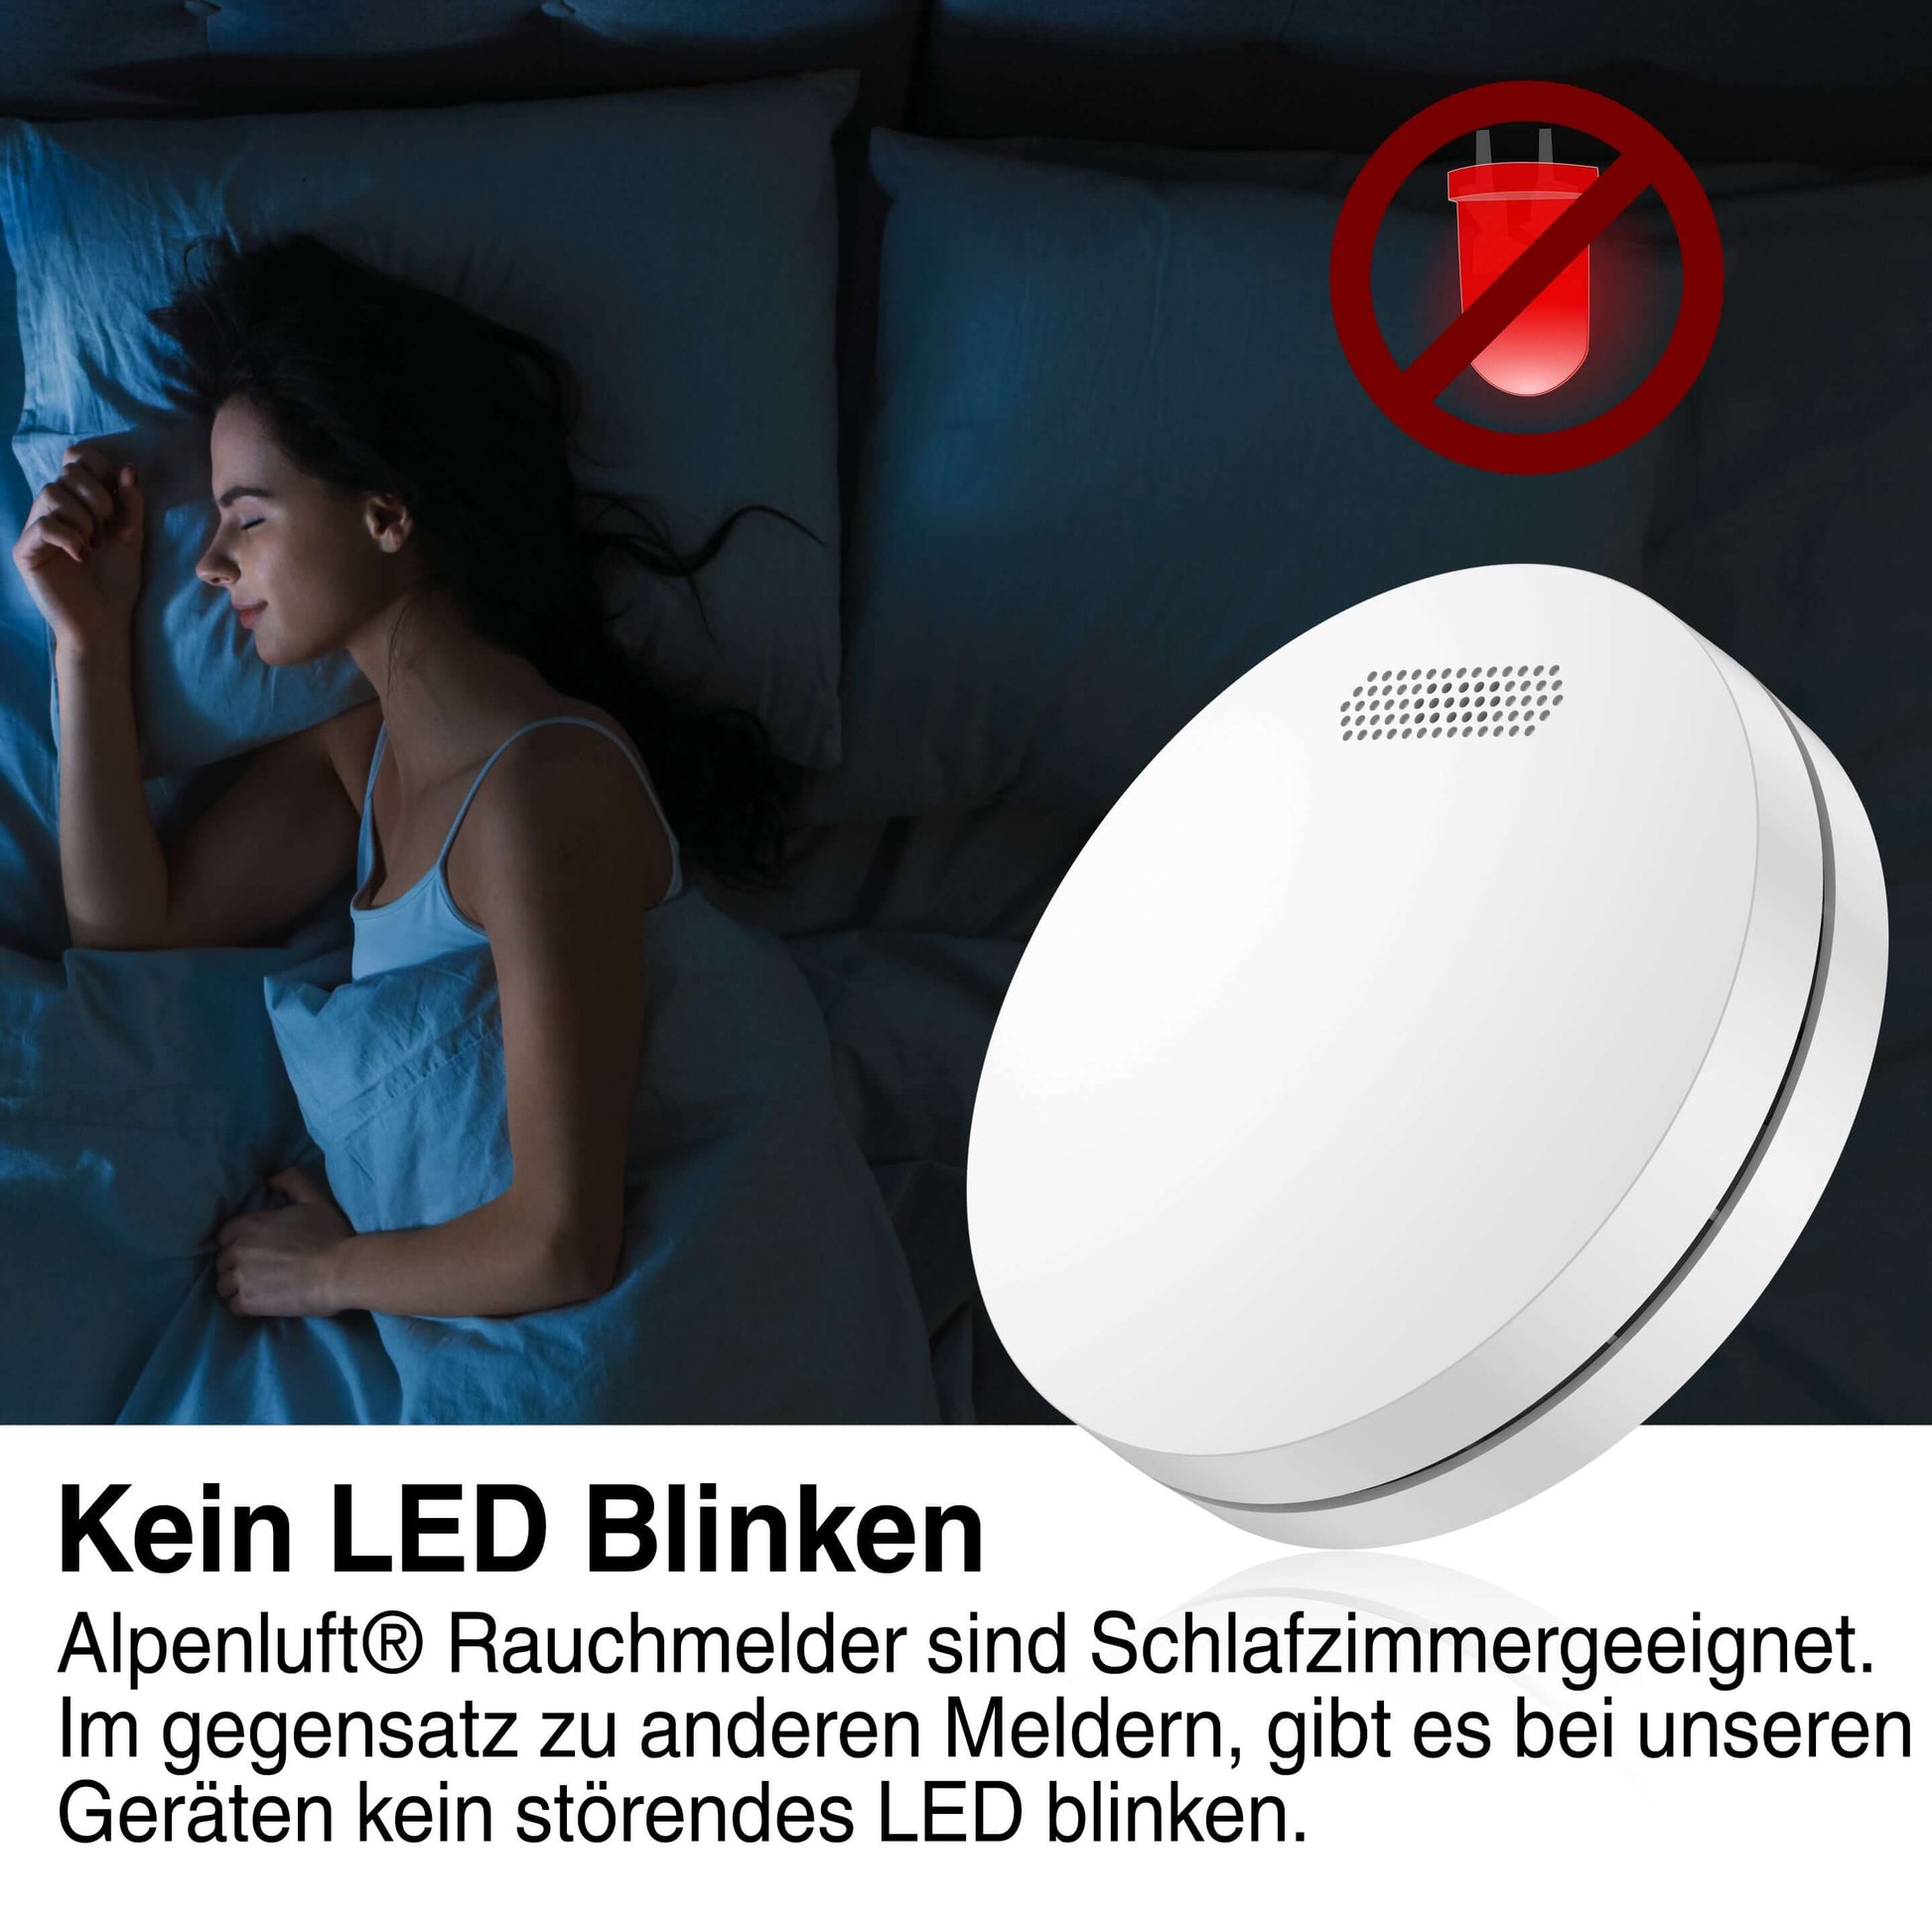 ALPENLUFT Rauchmelder Schlafzimmergeeignet ohne LED-Blinken